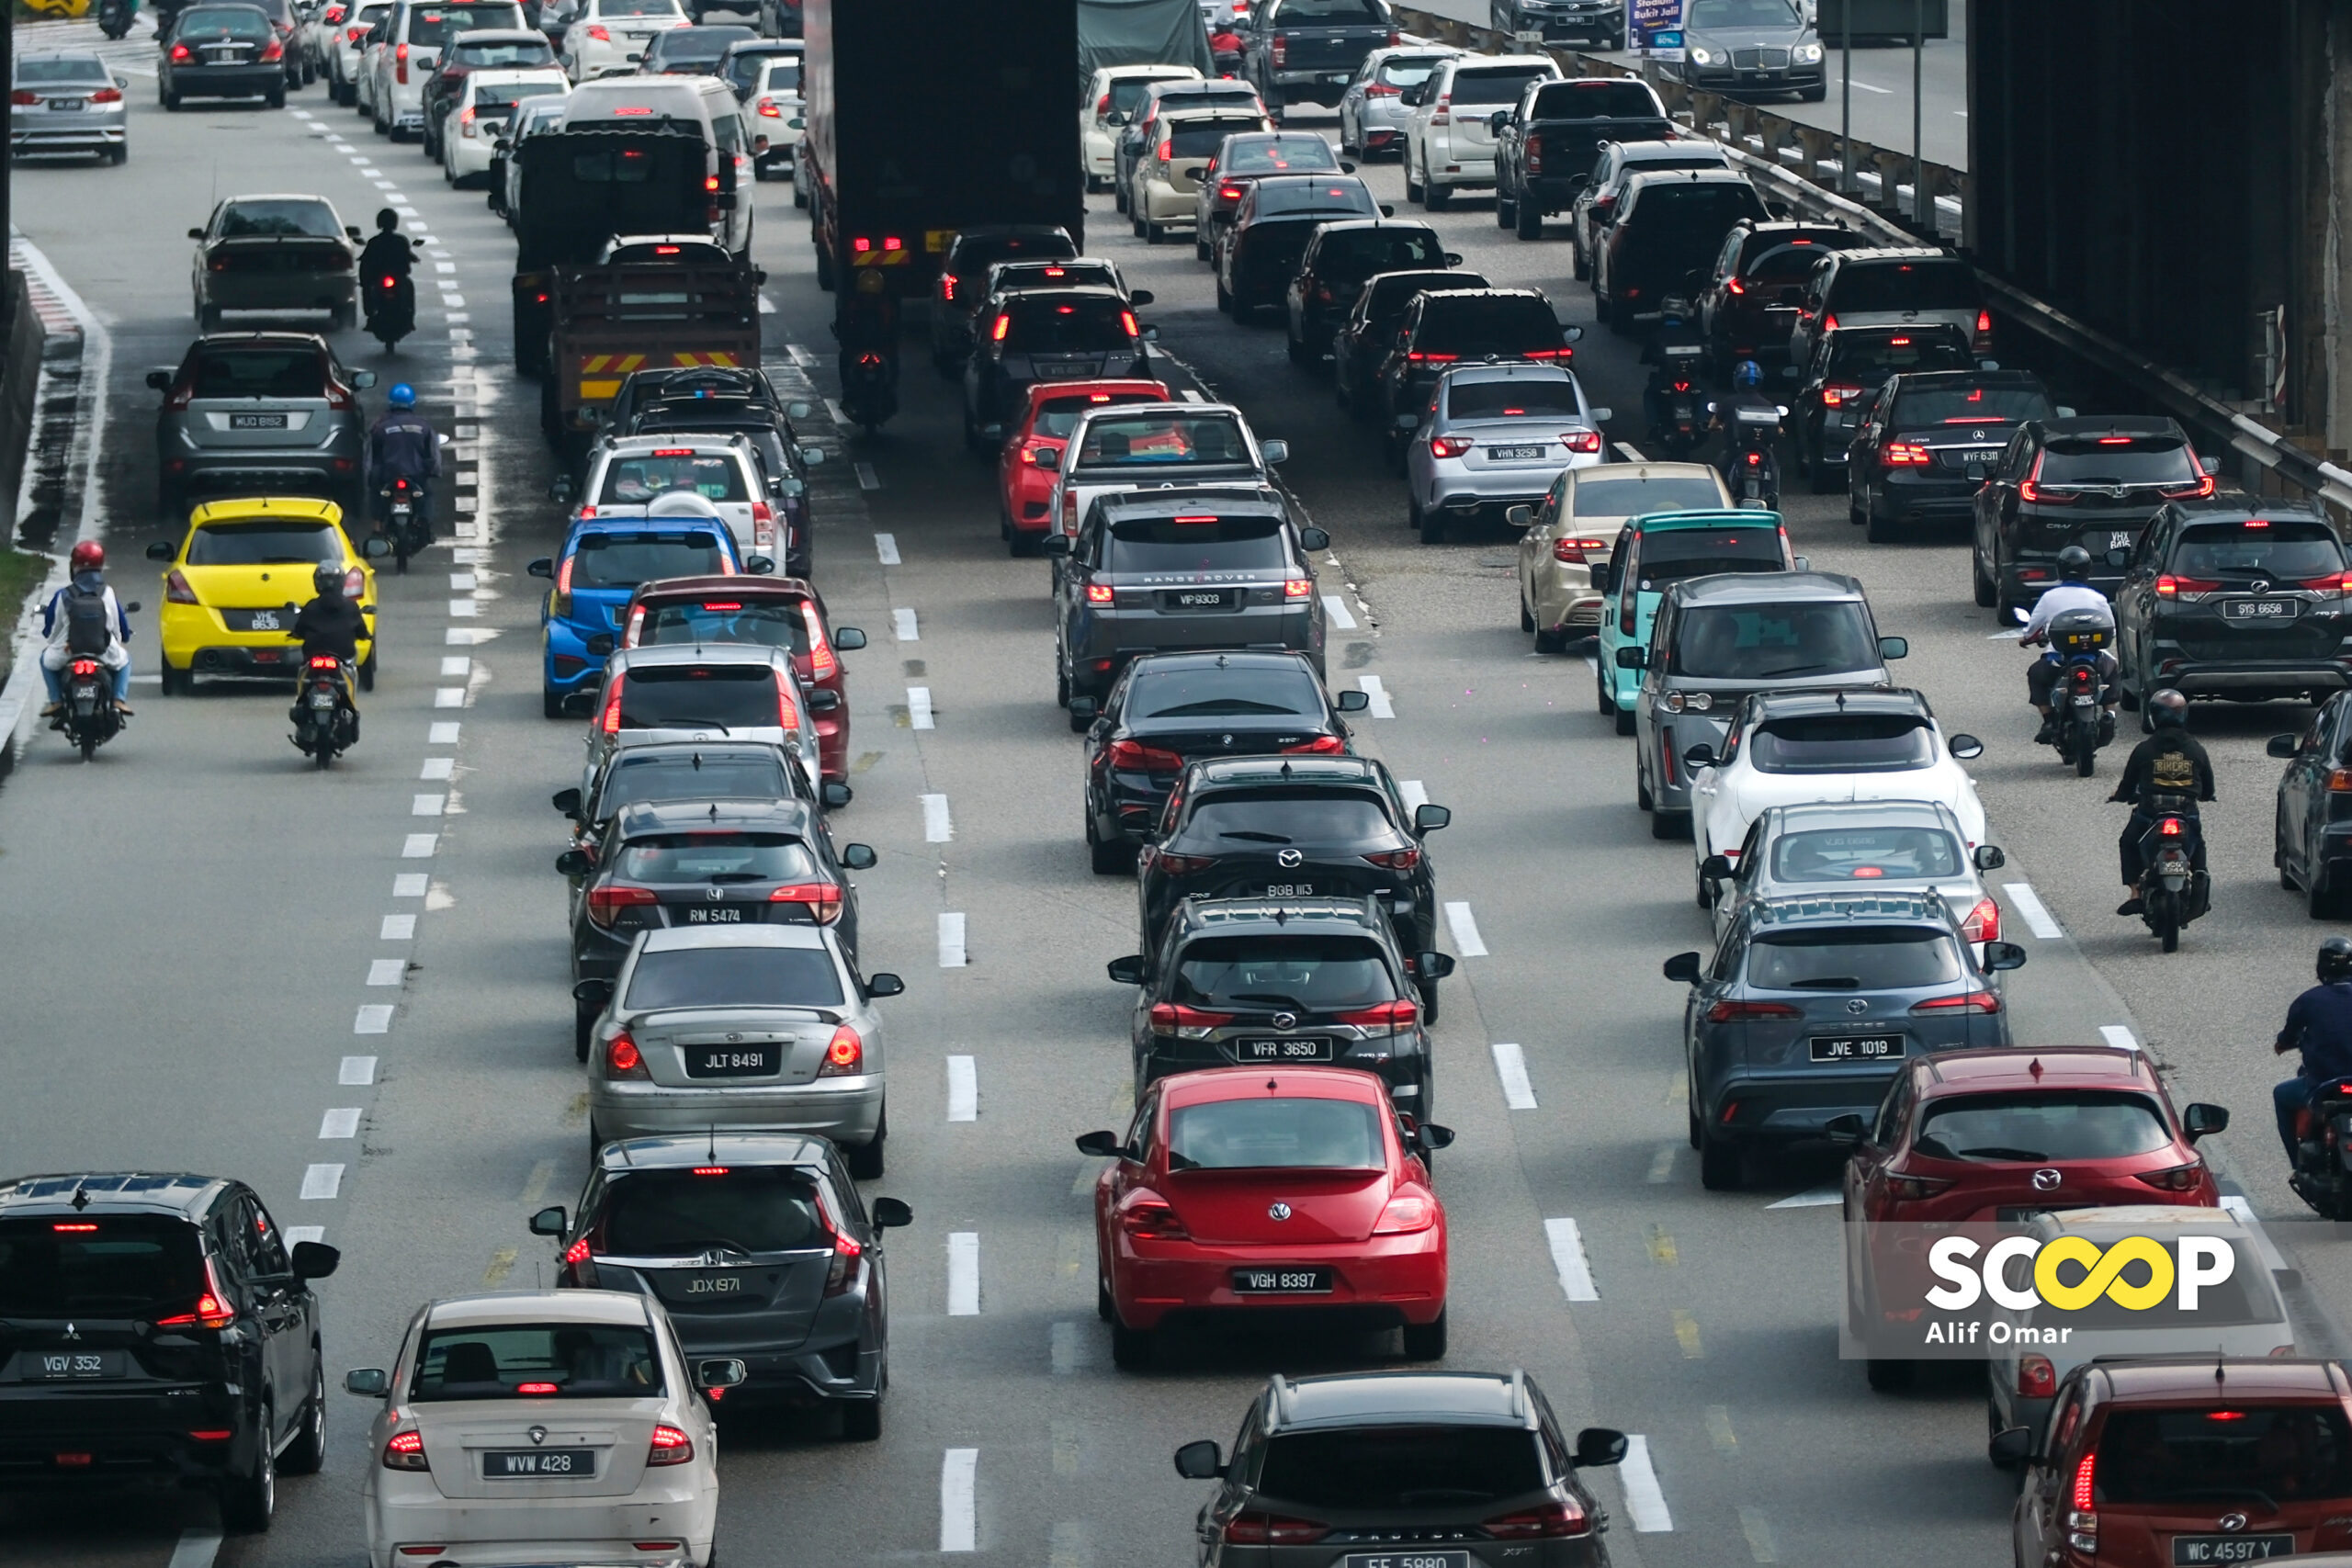 20-hour journeys: Malaysians recount arduous traffic jams during Hari Raya